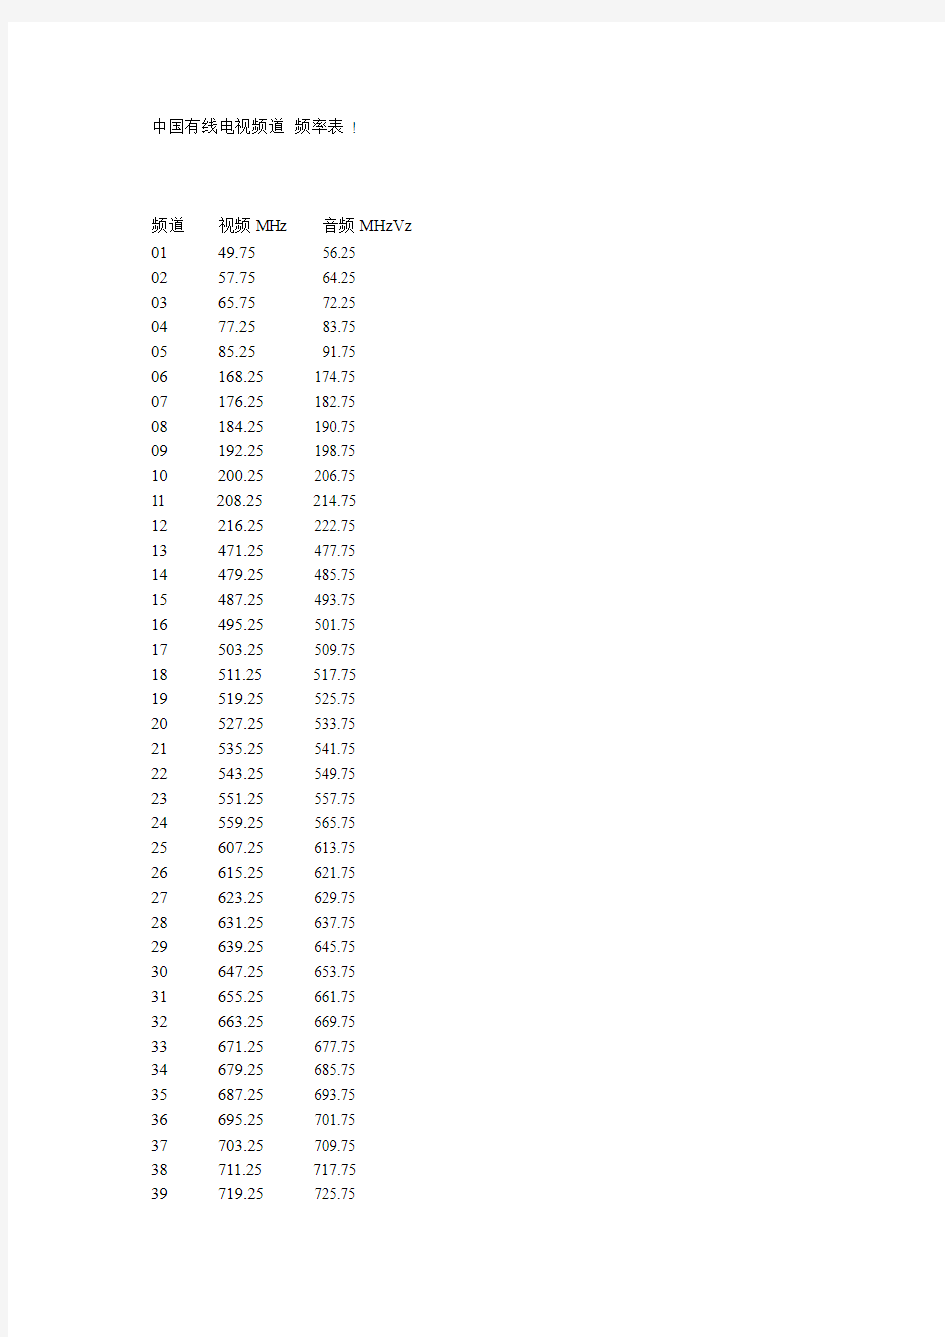 中国有线电视频道 频率表